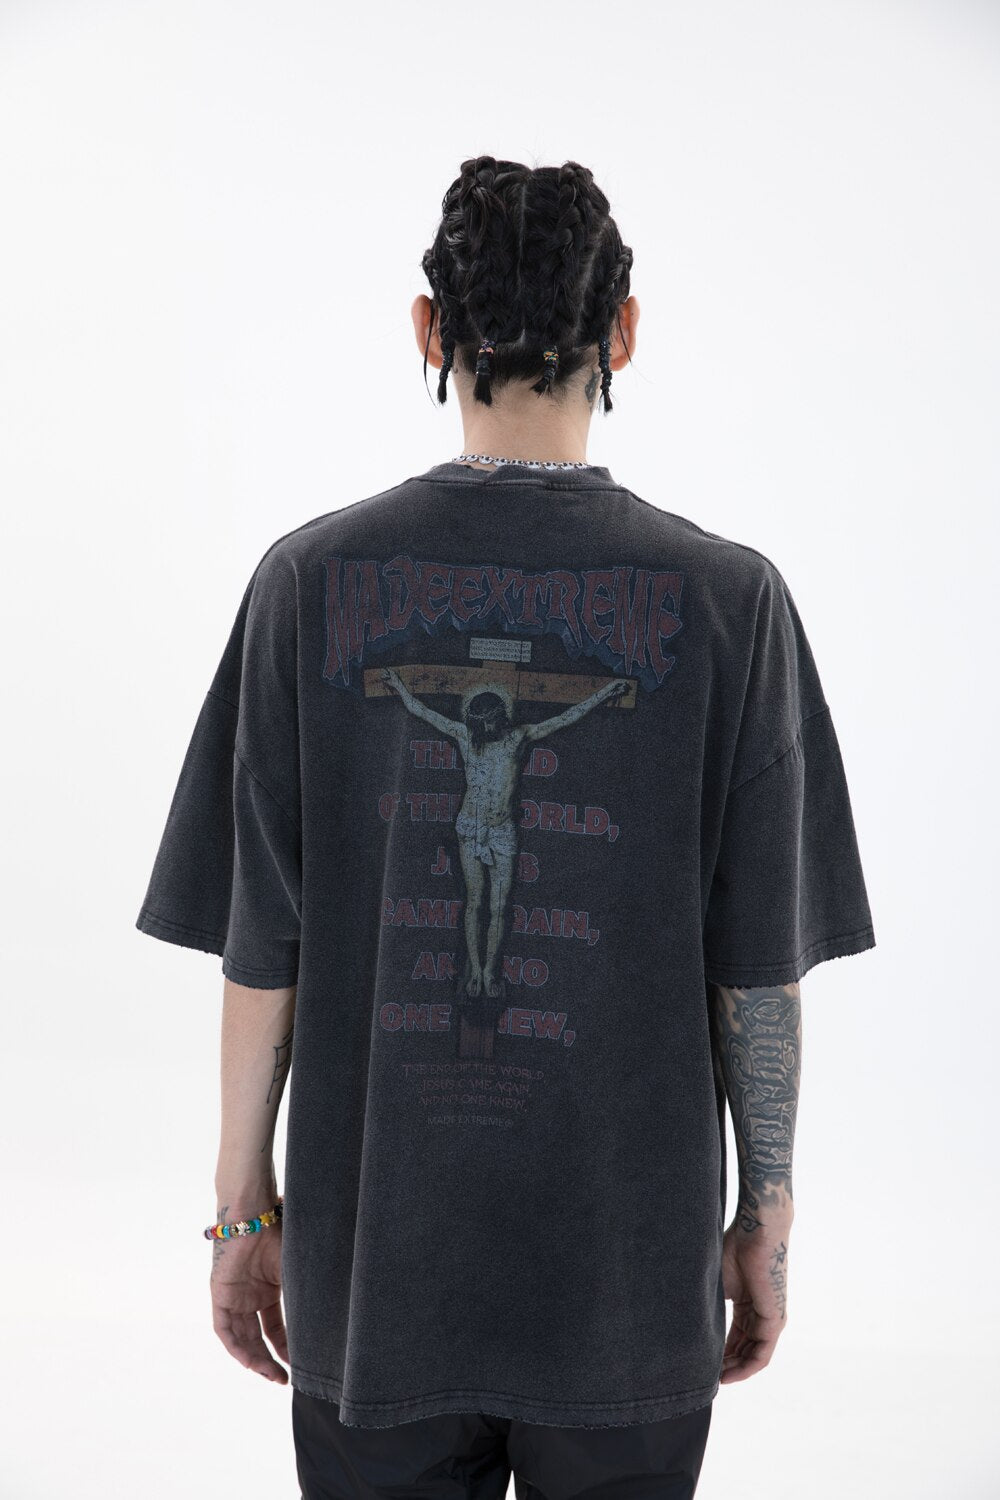 MADEEXTREME 'The Lord' T-Shirt ,  - Streetwear T-Shirt - Slick Street